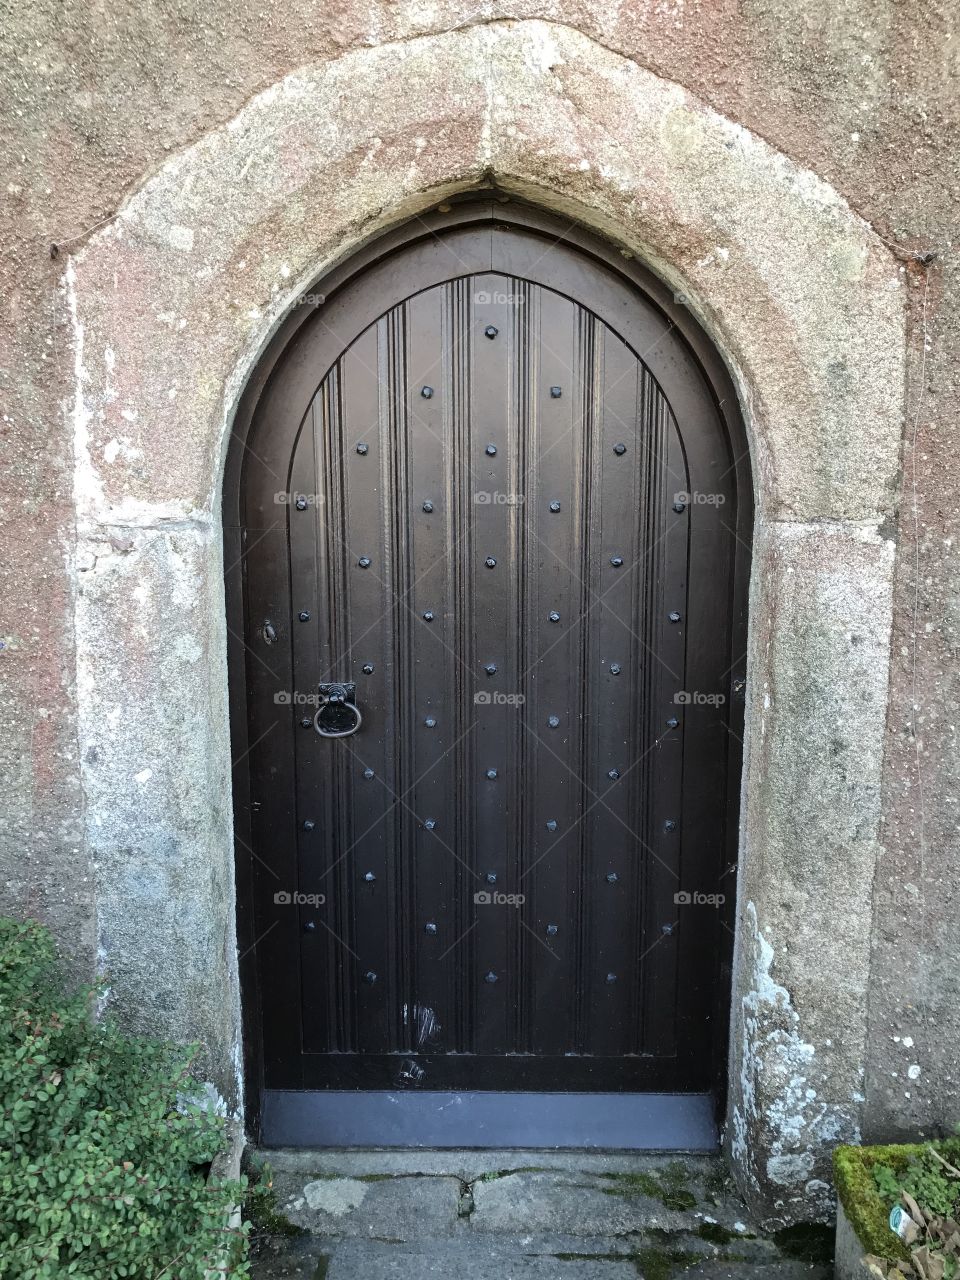 Sumptuous entrance door of Coffinswell’s church, with authentic stone and dark wood veneered door.